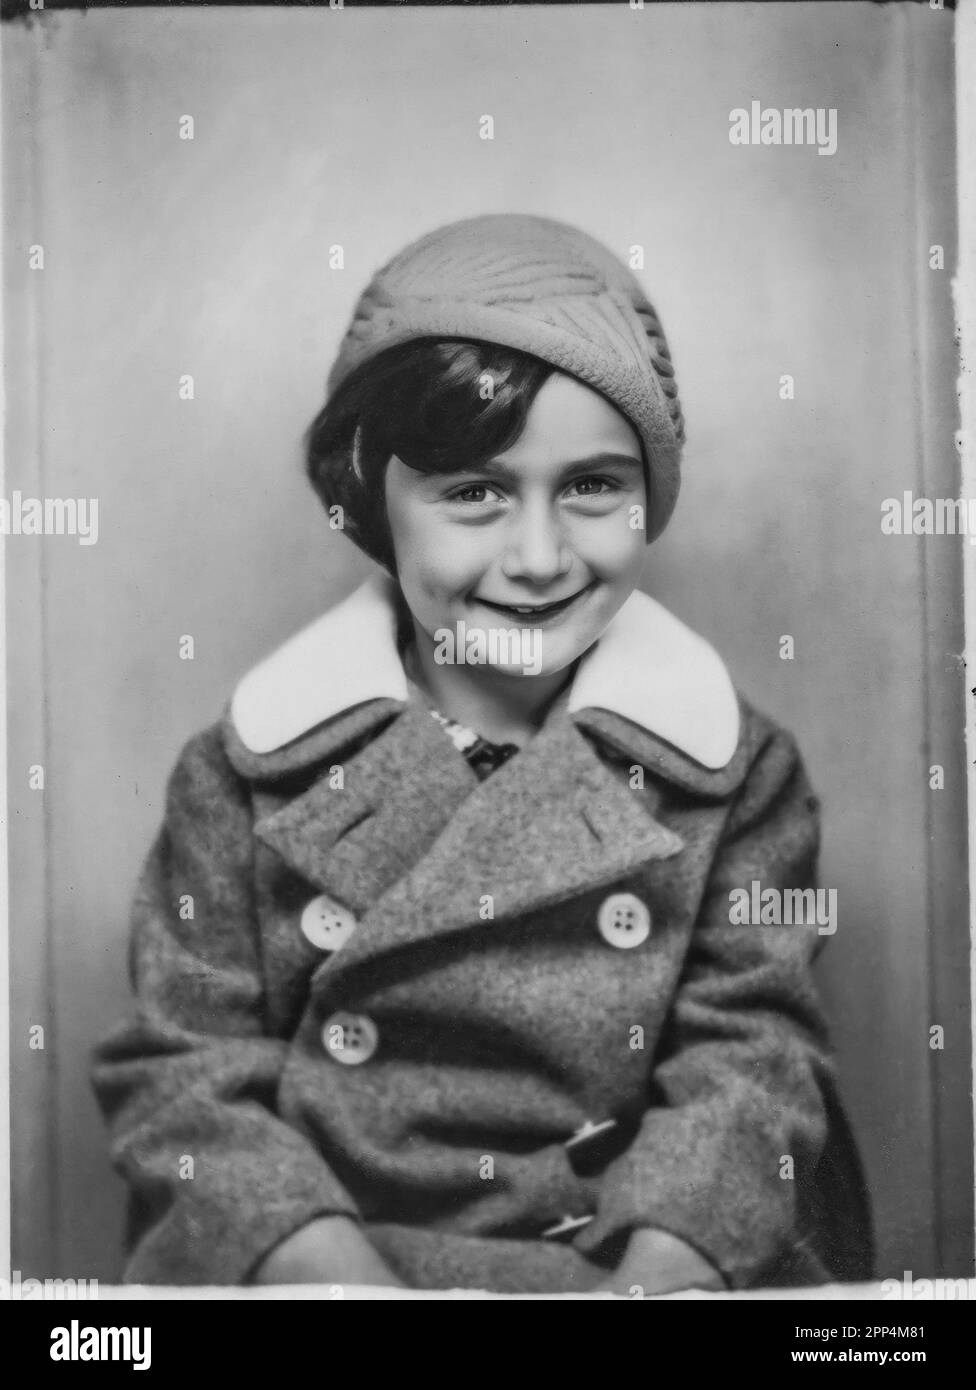 Anne Frank à l'âge de cinq ans. Bad Aachen, Allemagne, 11 septembre 1934. Veuillez noter que le visage d'Anne Frank a été amélioré numériquement. Pas alt Banque D'Images